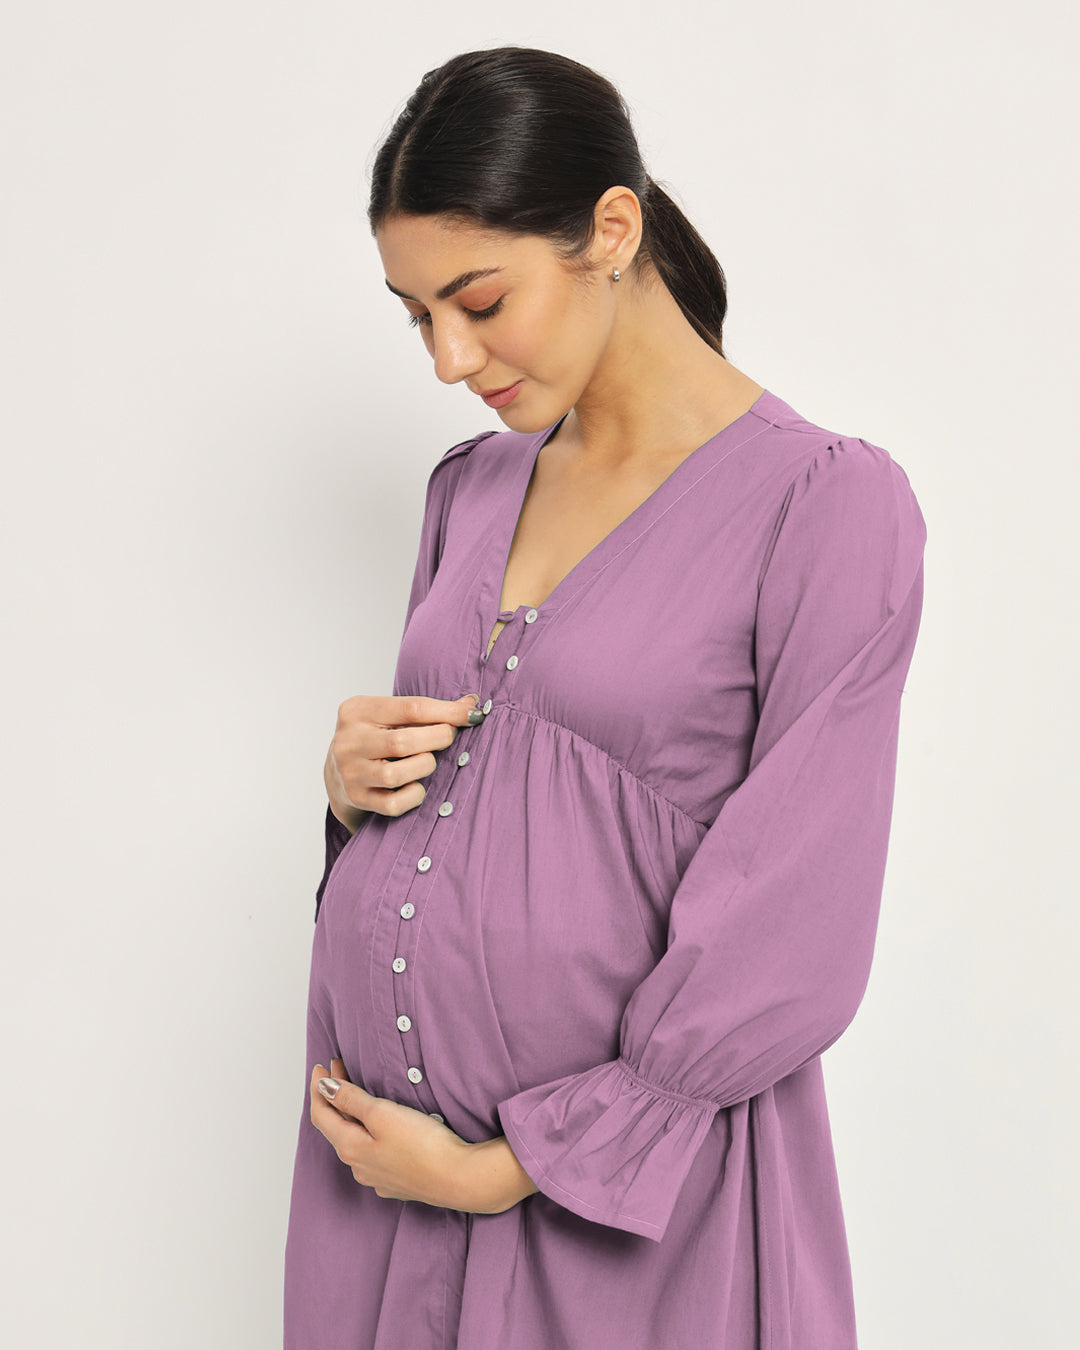 Iris Pink Glowing Bellies Maternity & Nursing Dress